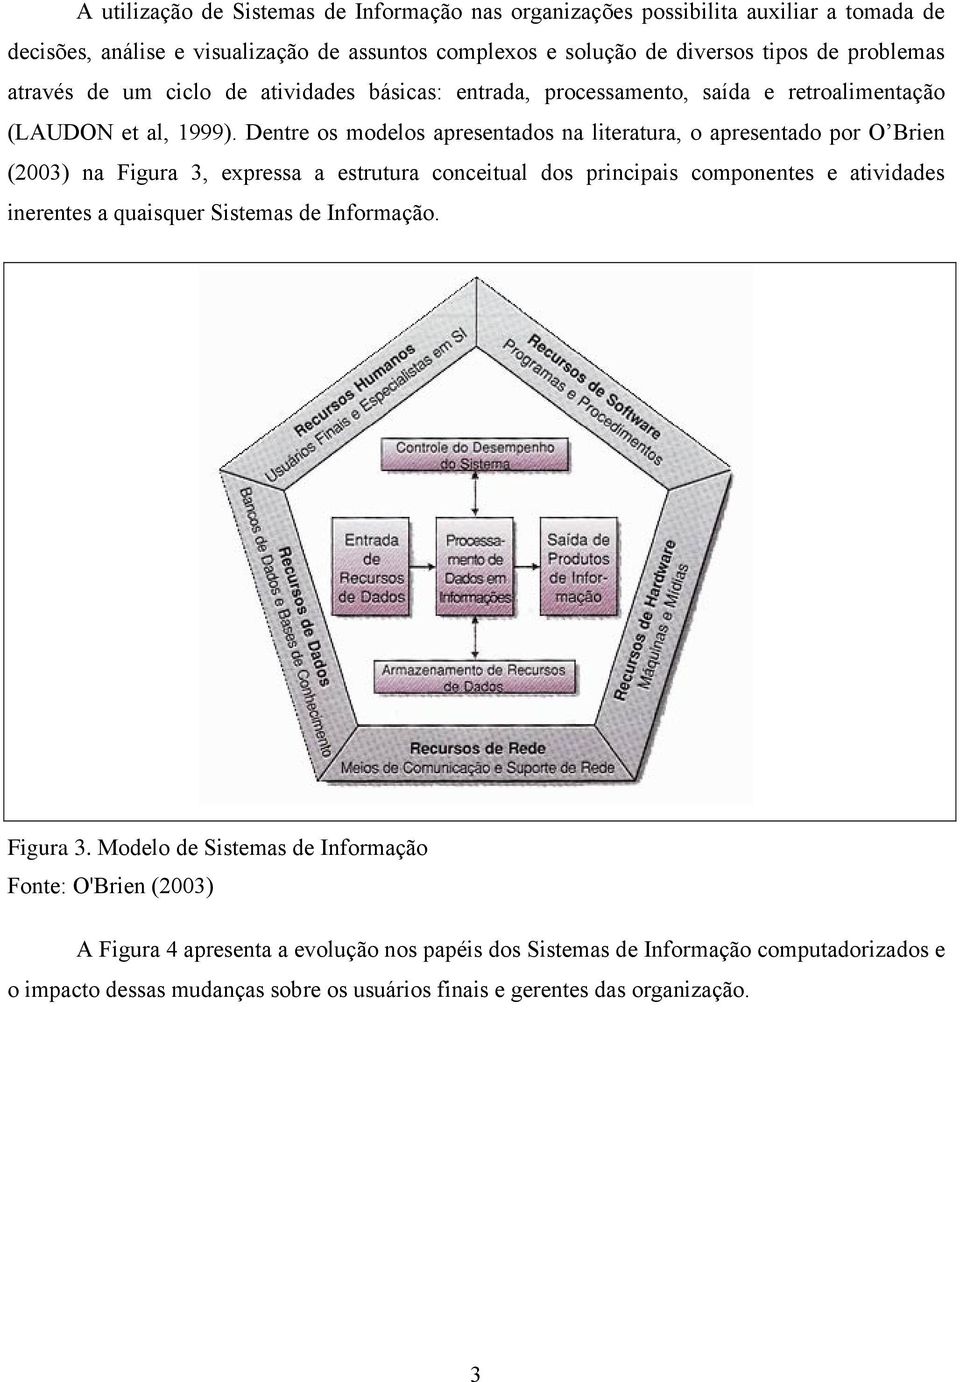 Dentre os modelos apresentados na literatura, o apresentado por O Brien (2003) na Figura 3, expressa a estrutura conceitual dos principais componentes e atividades inerentes a quaisquer